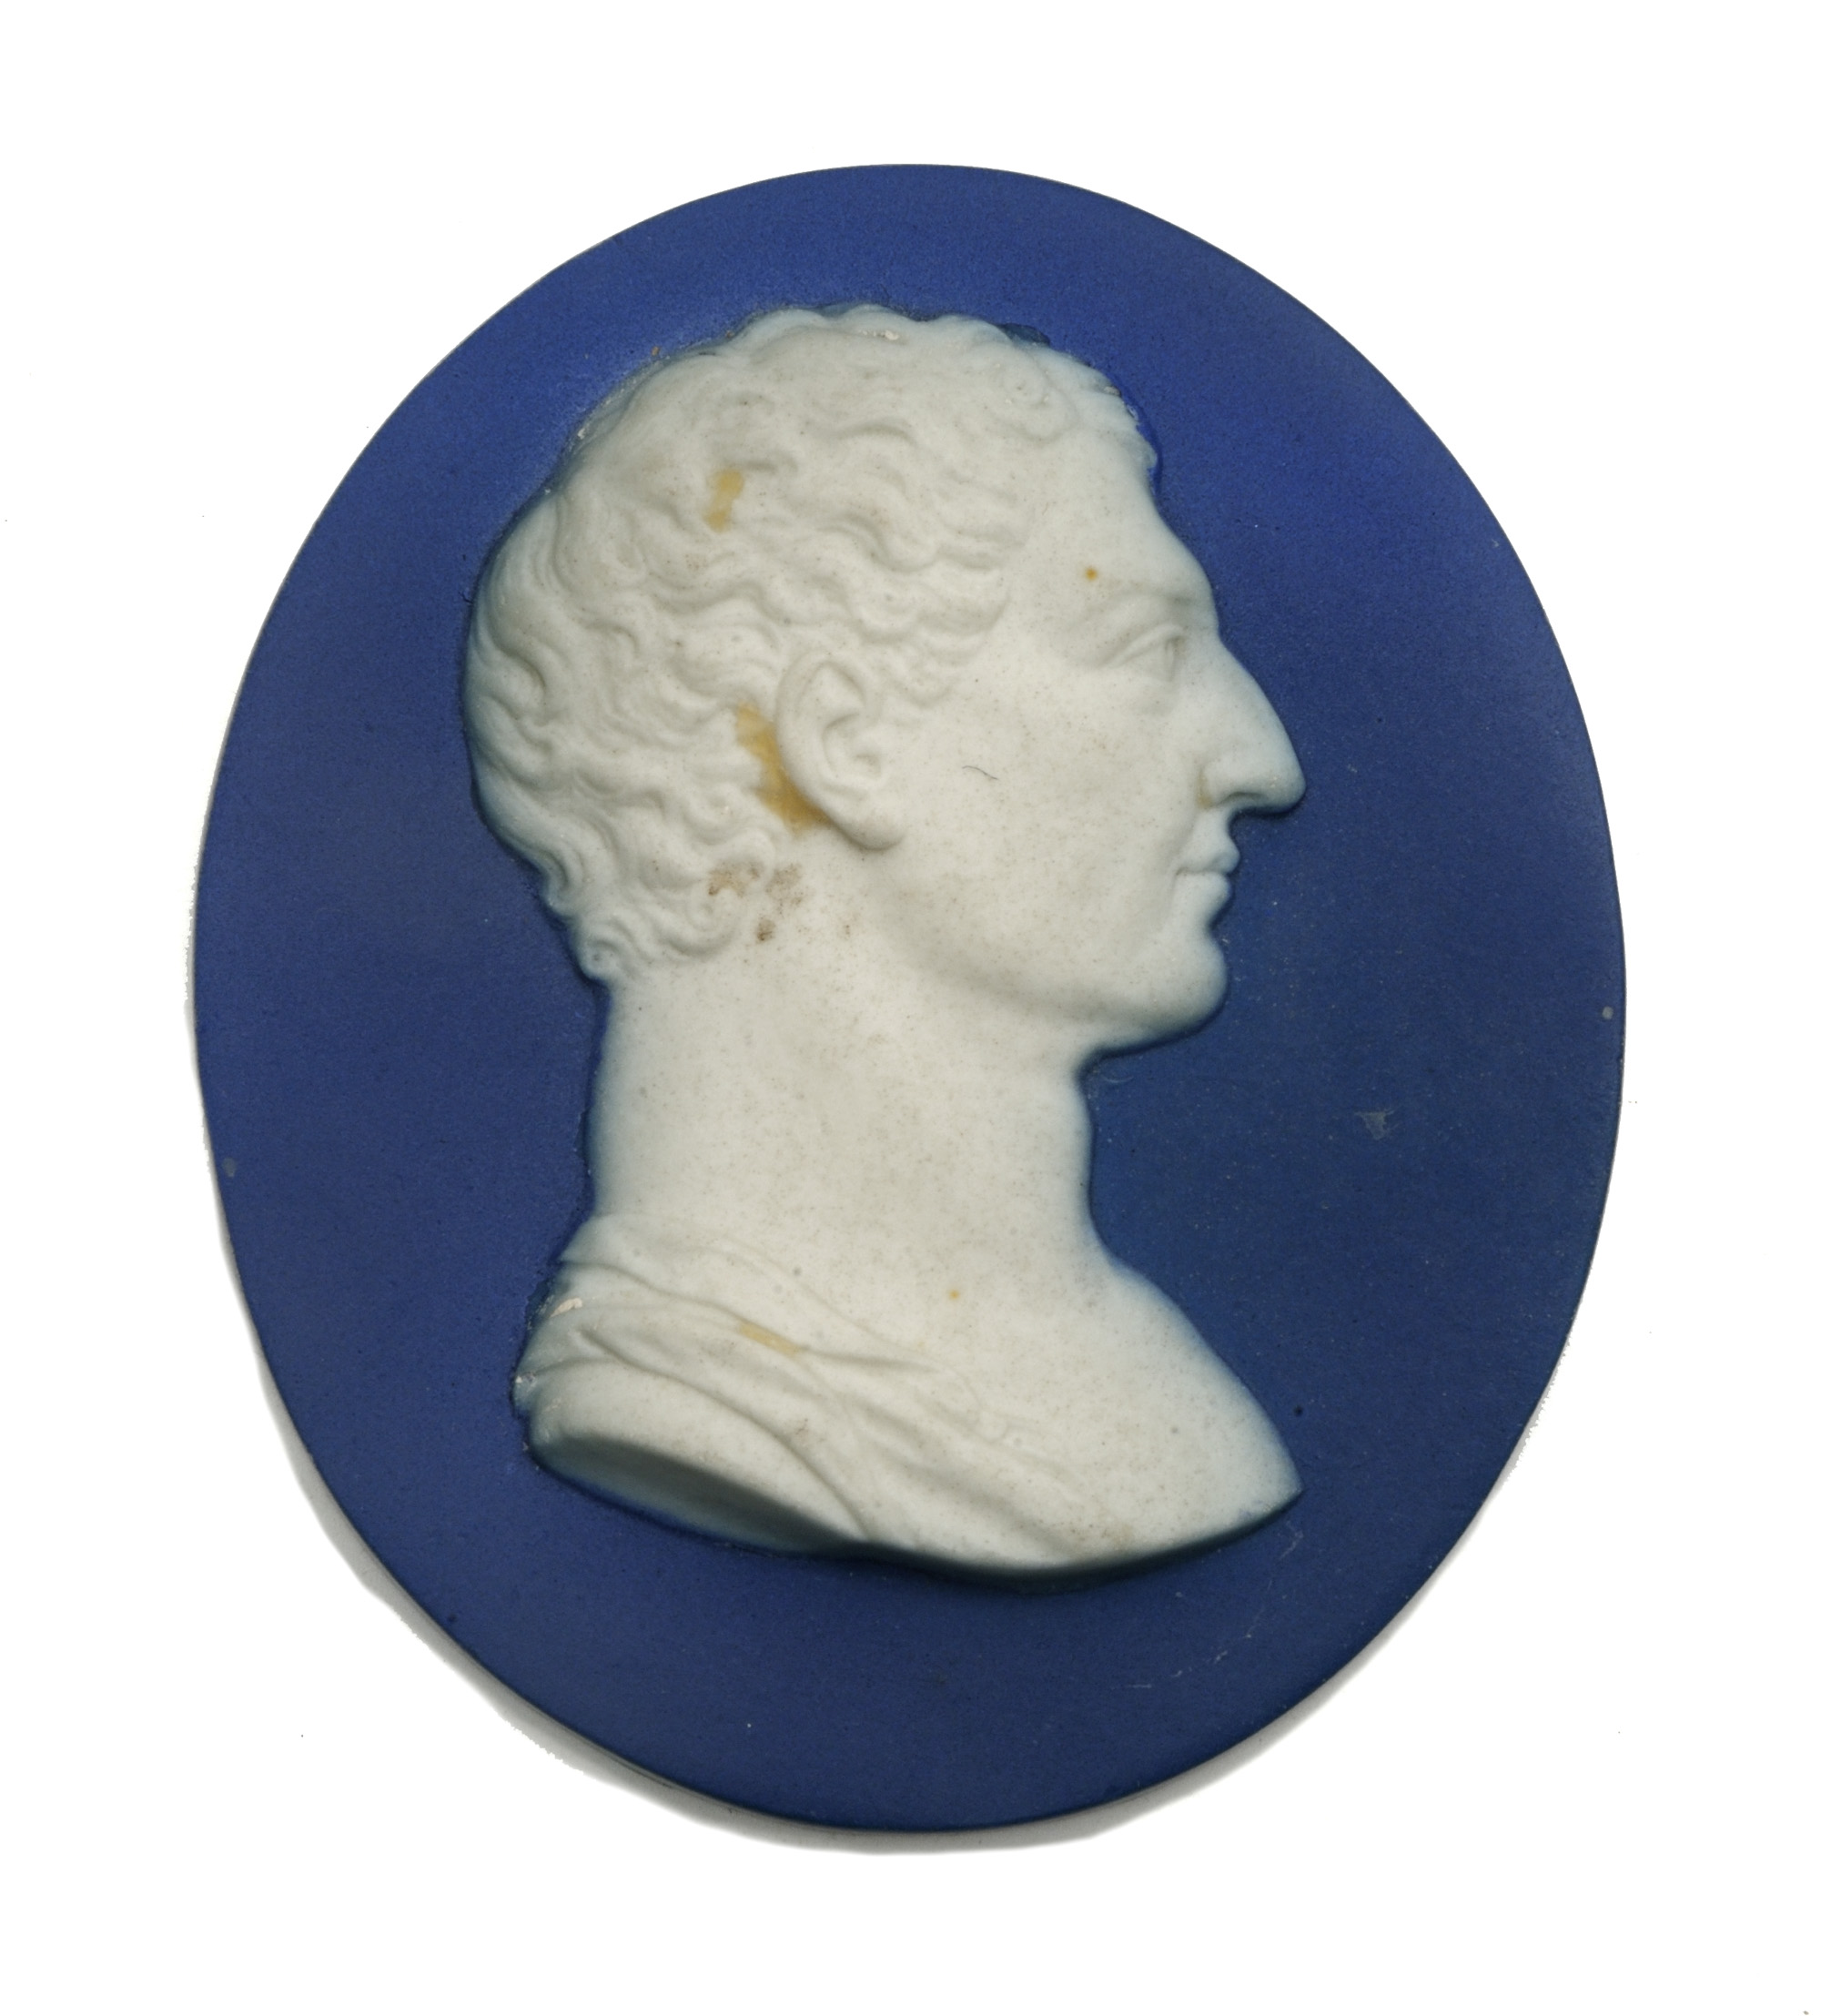 George Washington portrait medallion by Wedgwood & Bentley, ca. 1777